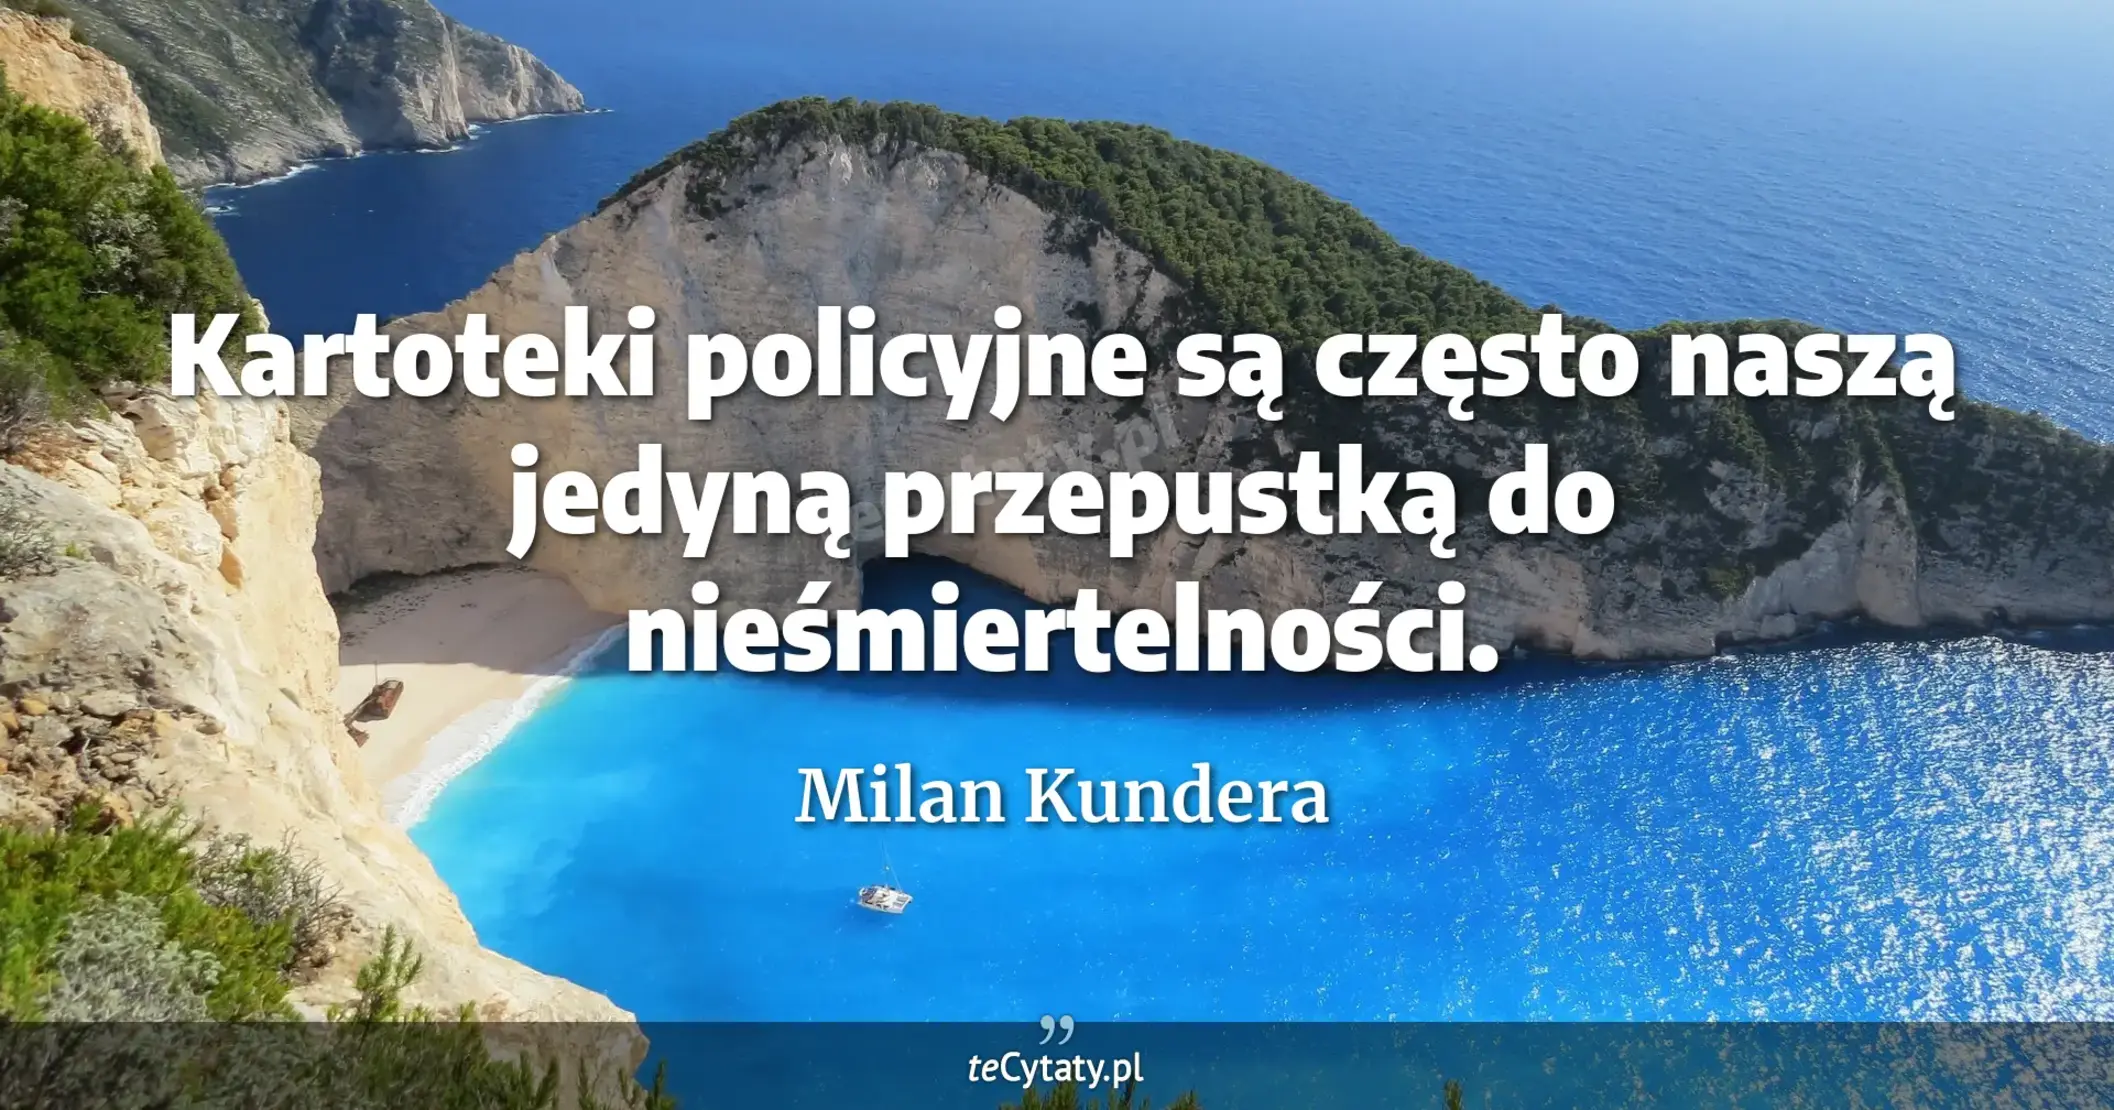 Kartoteki policyjne są często naszą jedyną przepustką do nieśmiertelności. - Milan Kundera